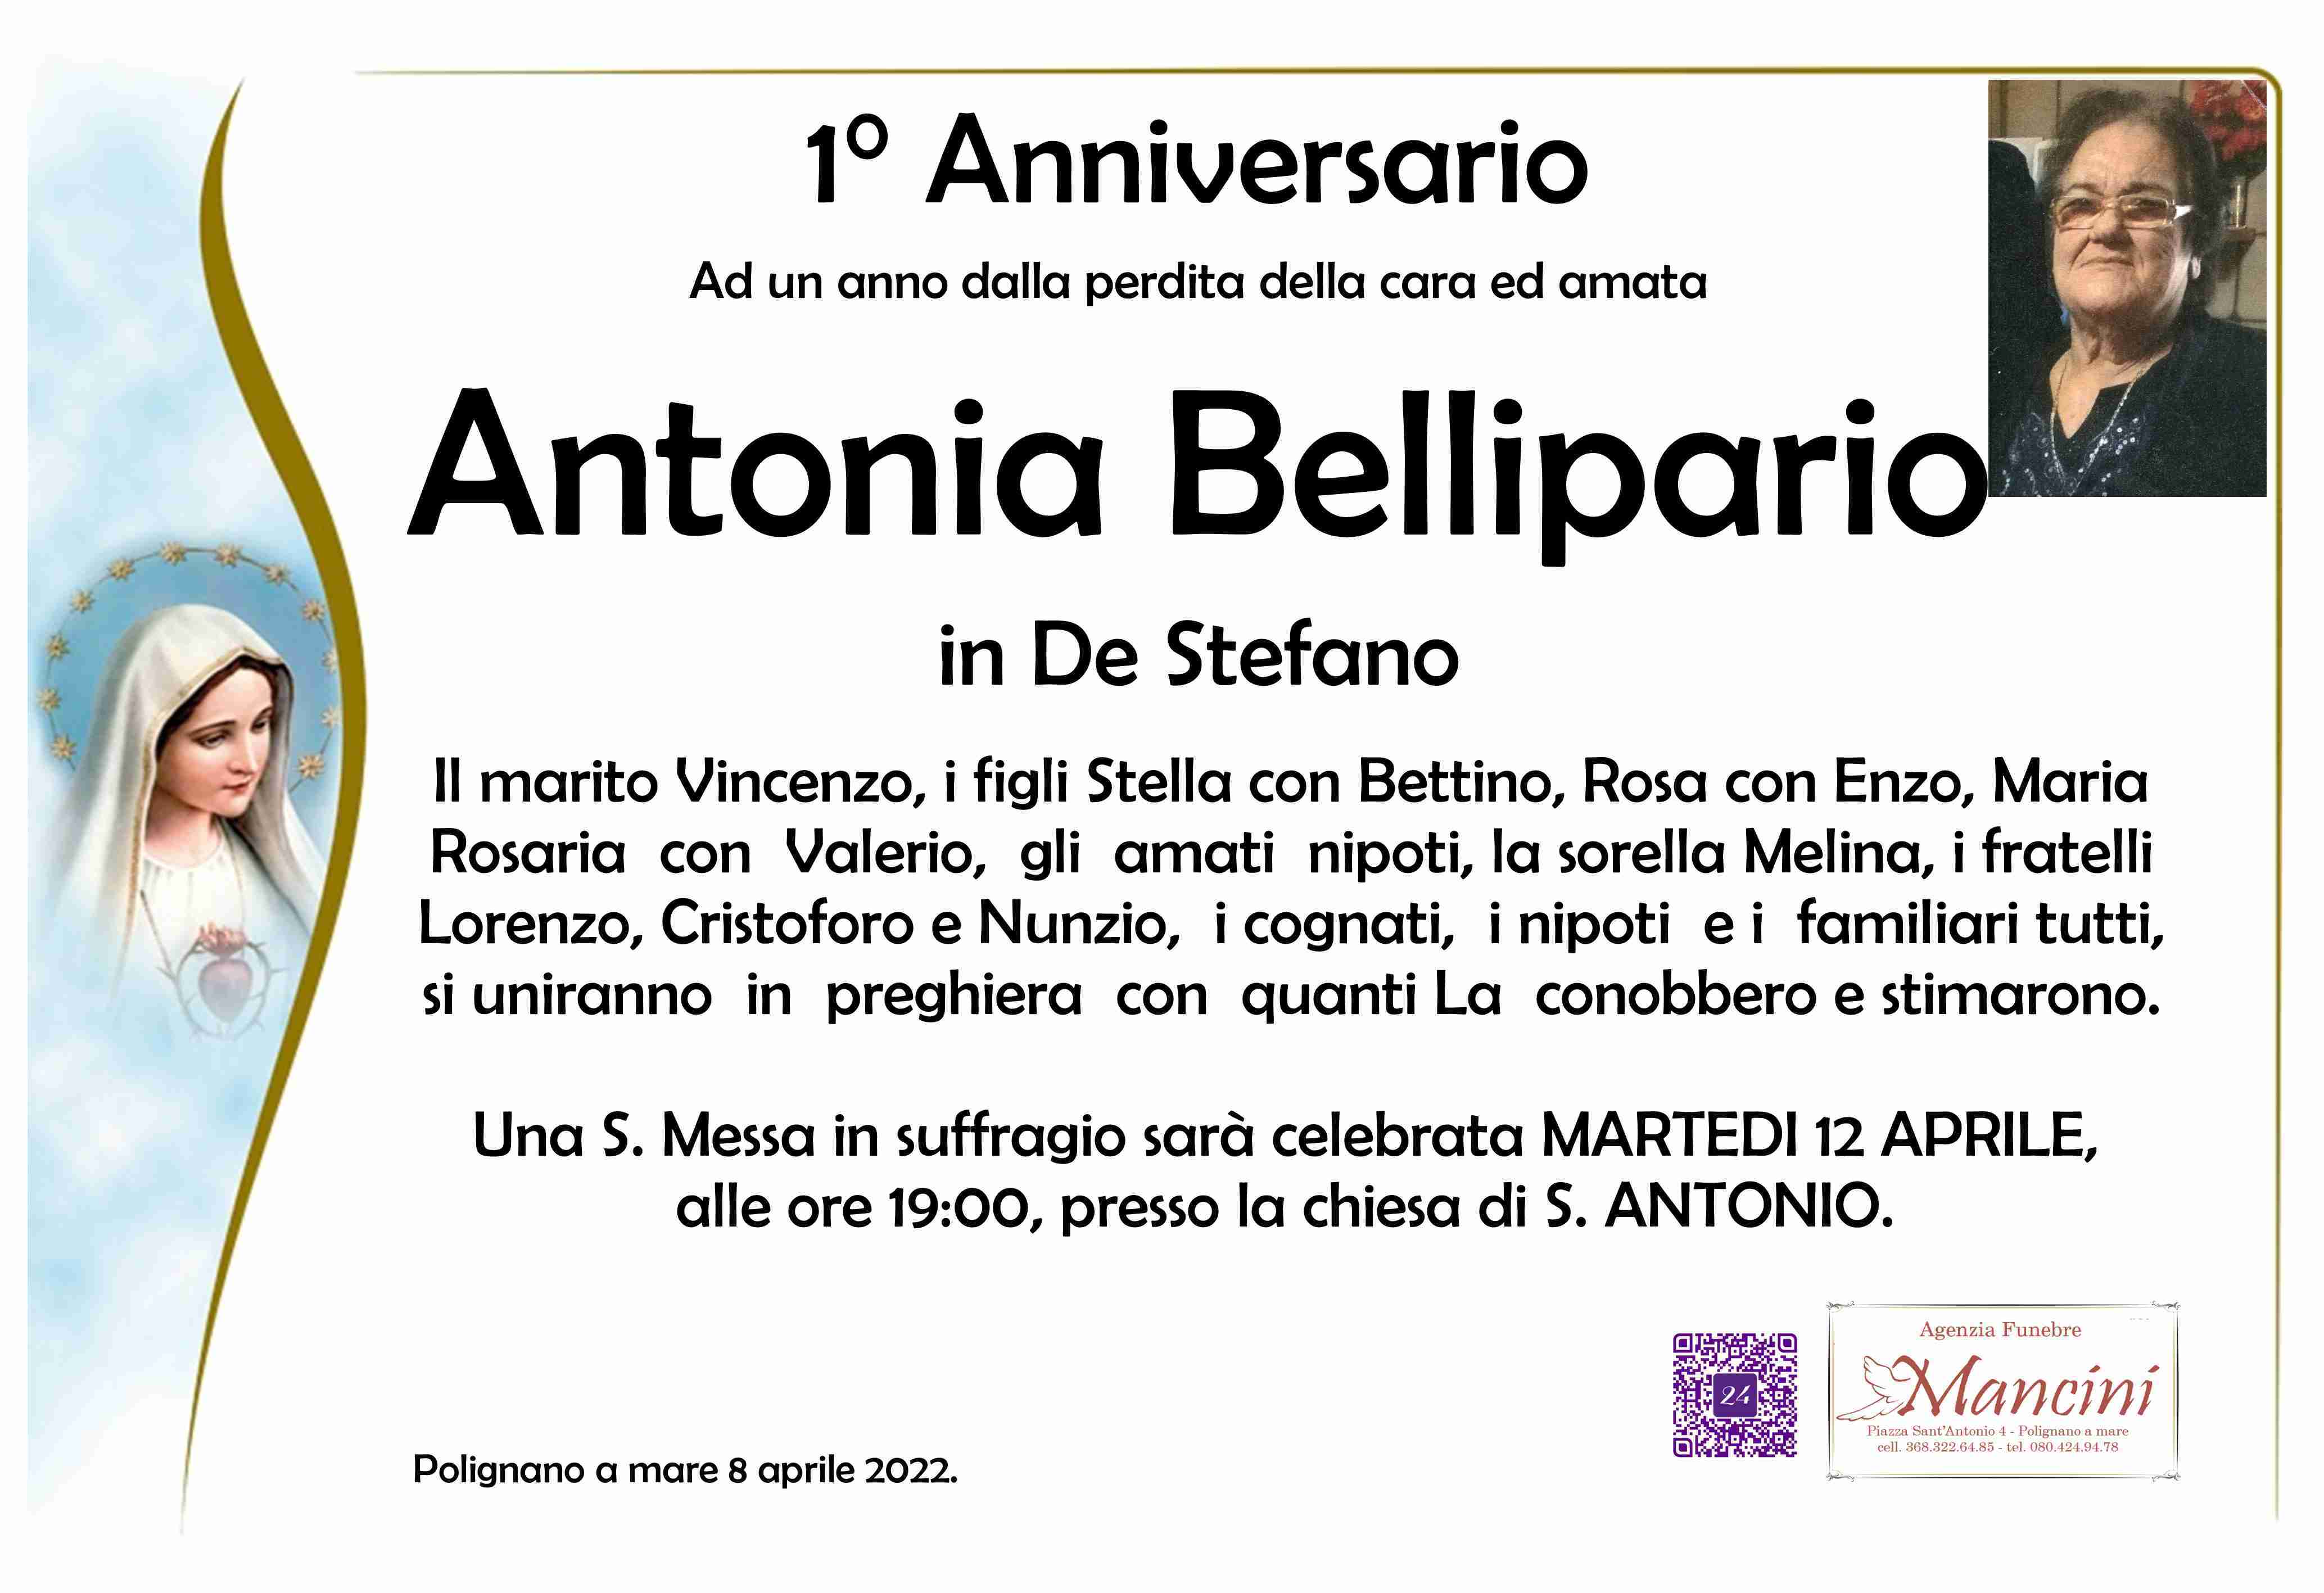 Antonia Bellipario